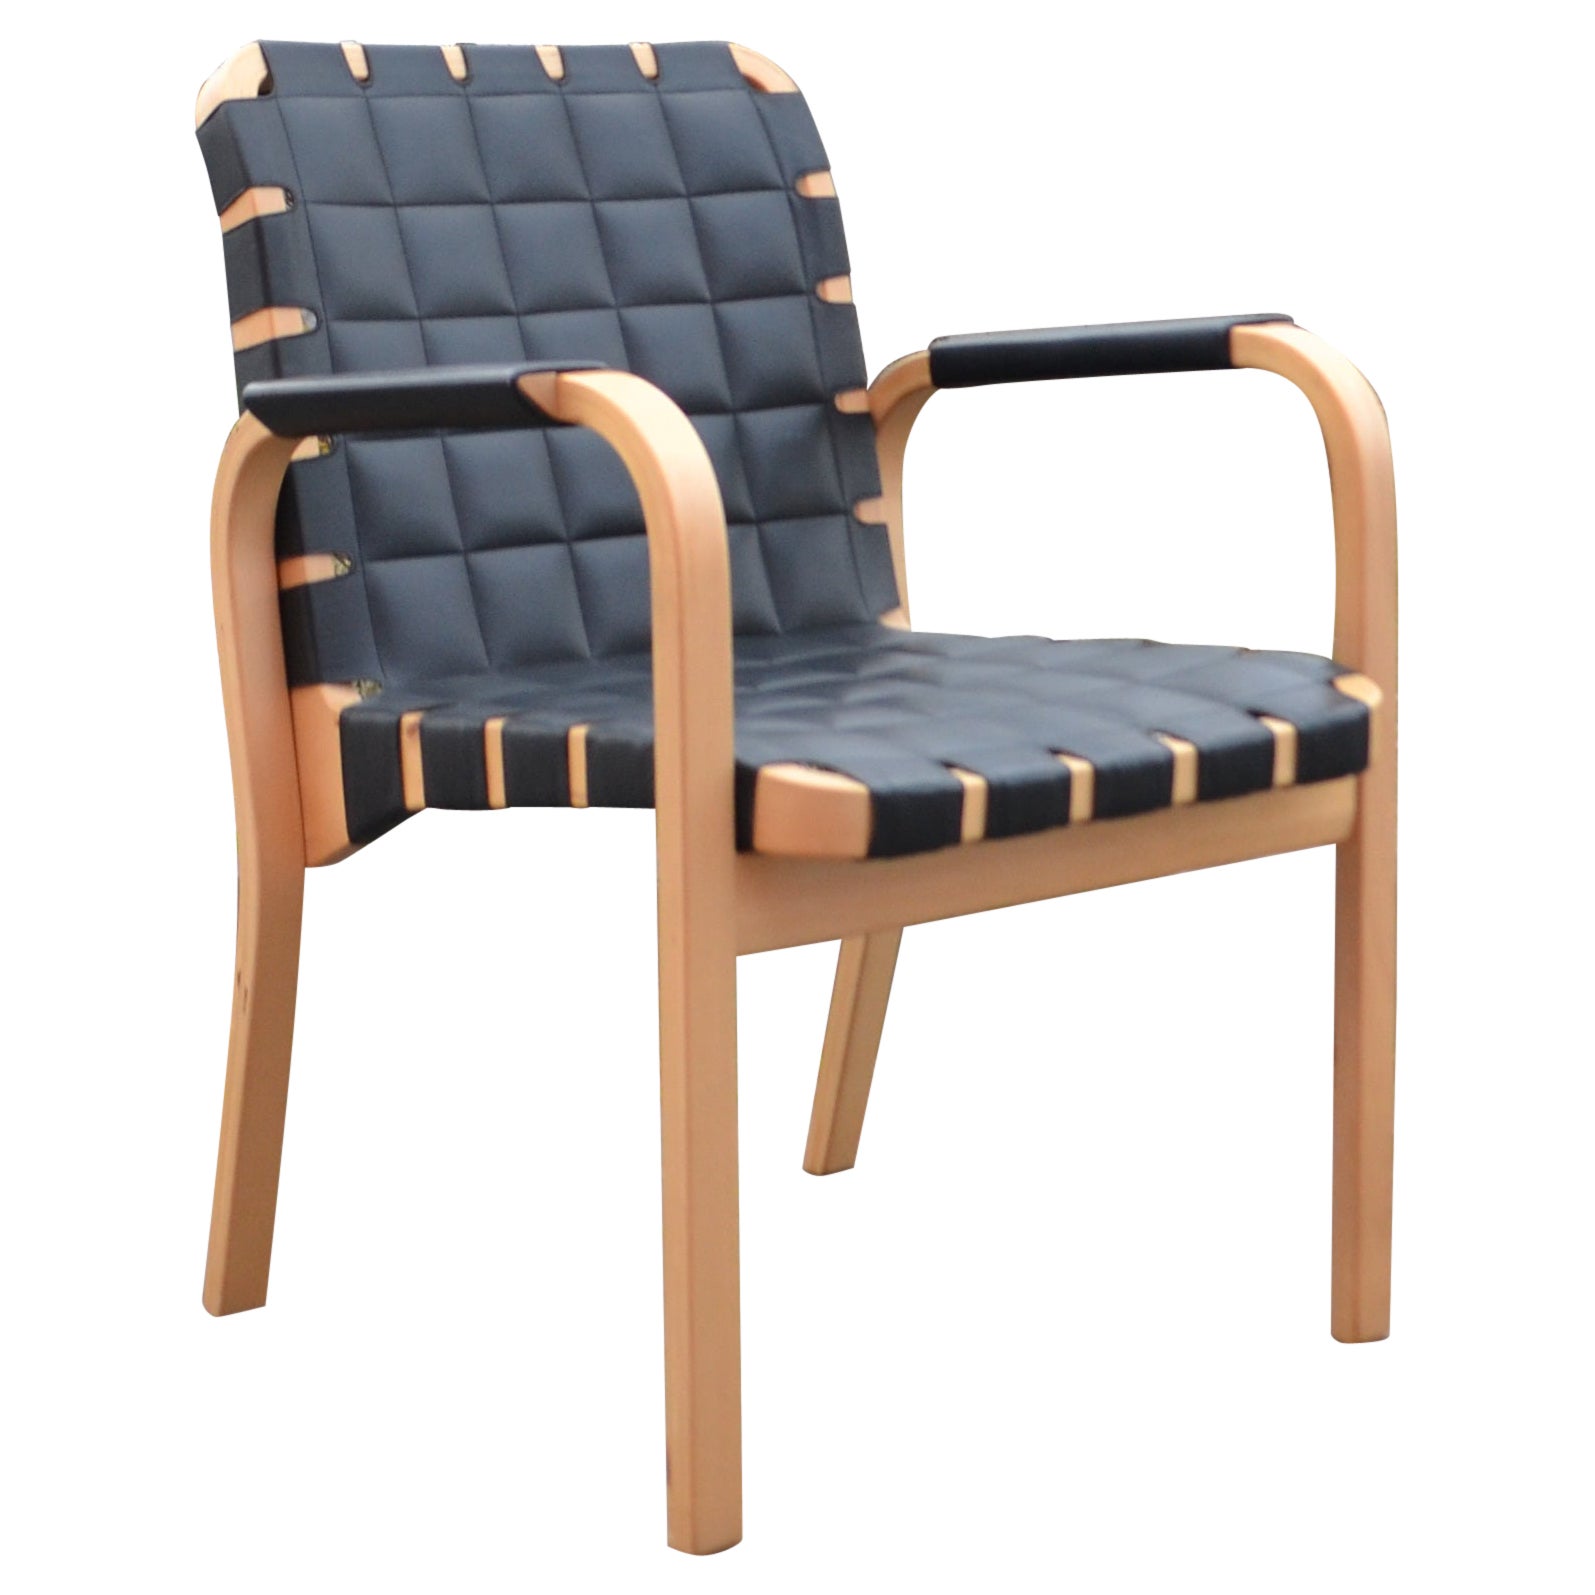 Alvar Aalto for Artek Model 45 Armchair Chair Black Leather 1 of 6 For Sale